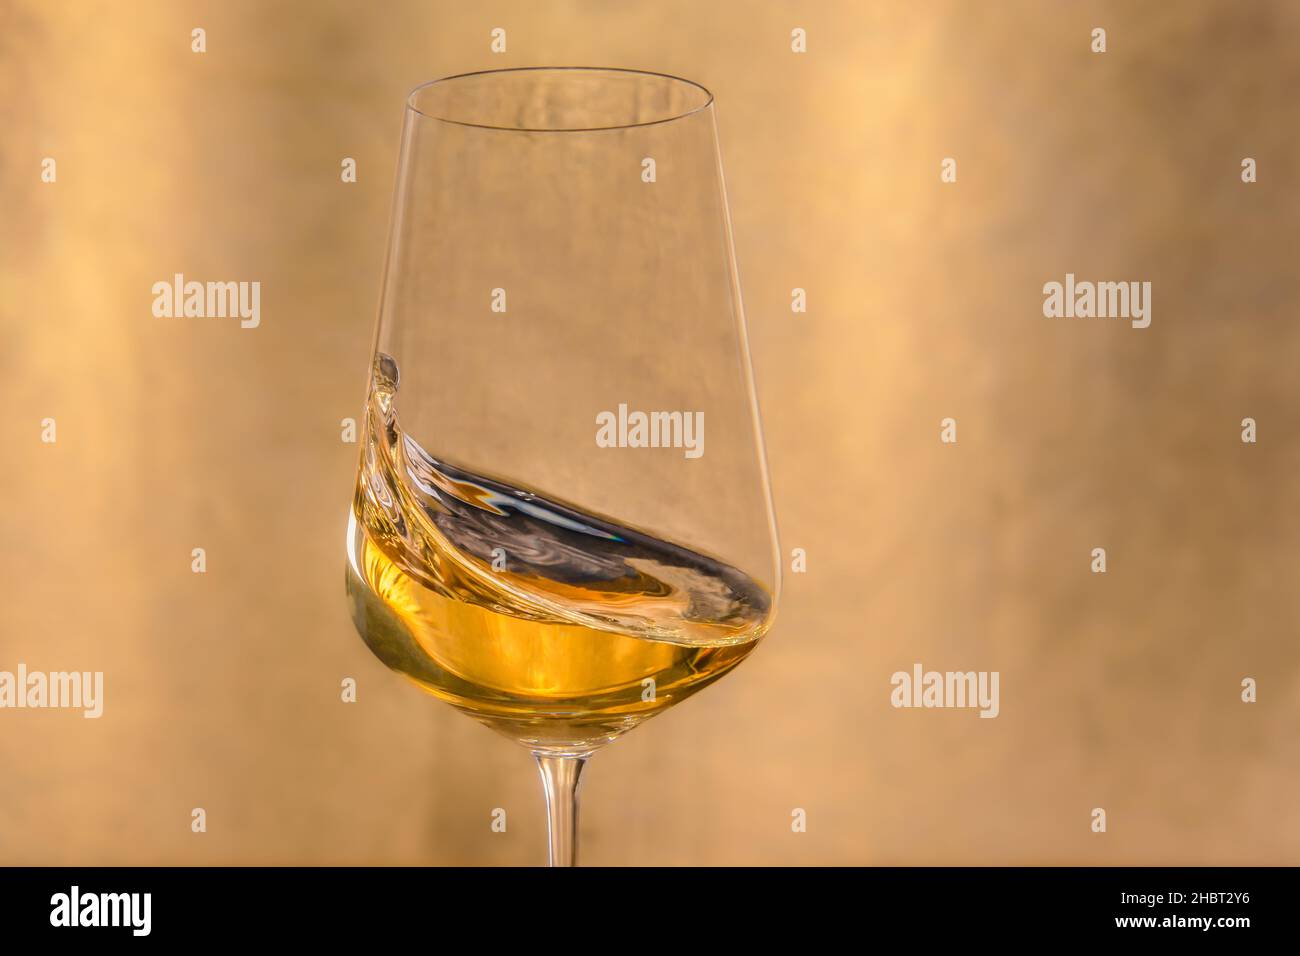 Gros plan d'un verre de vin doré Banque D'Images